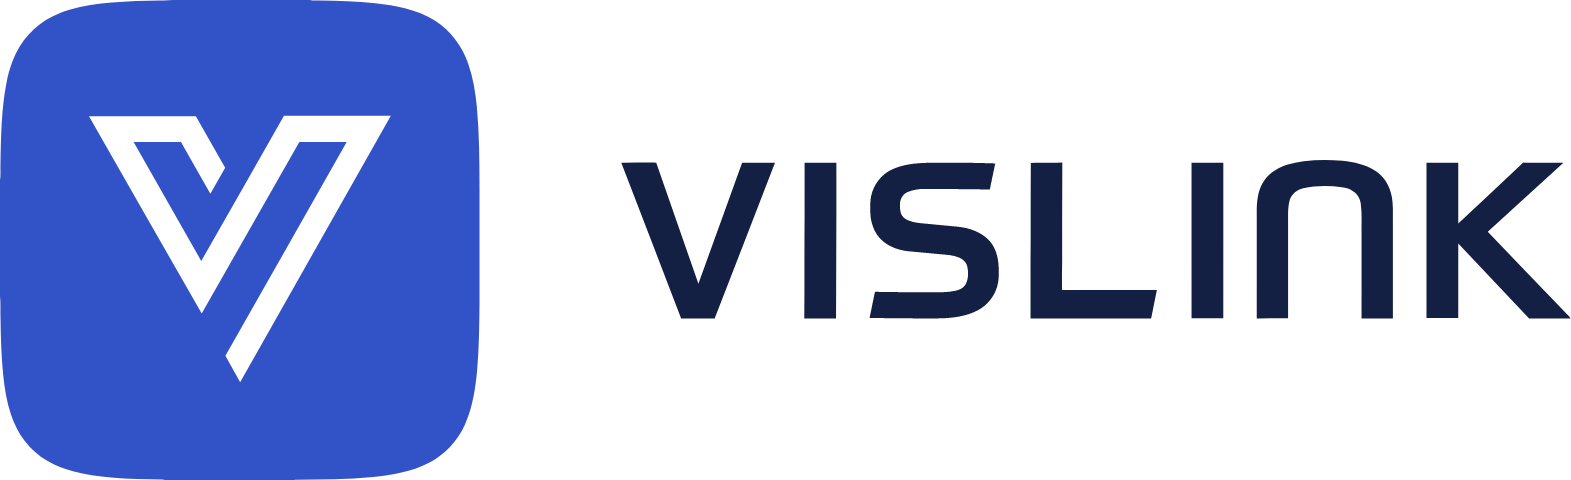 Vislink Technologies
 logo large (transparent PNG)